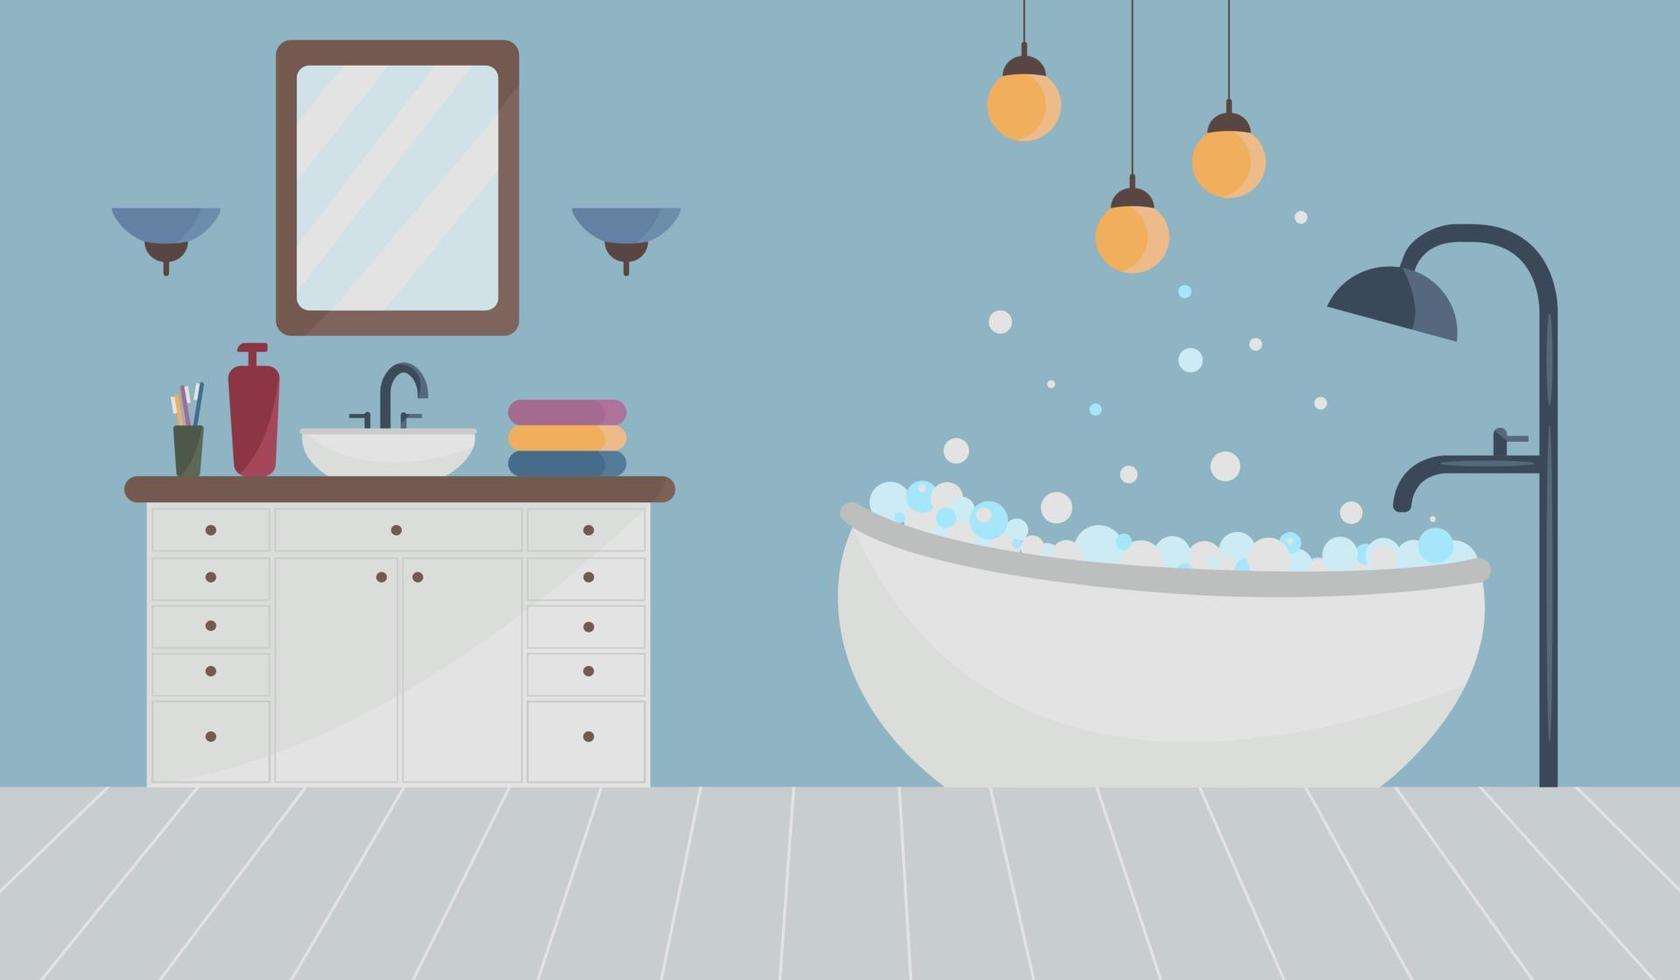 eine Illustration des Innenraums eines Badezimmers mit dem Bild einer mit Schaum gefüllten Badewanne sowie mit einer Dusche und einem Mischer und von der Decke hängenden Lampen. Vektor-Illustration. vektor